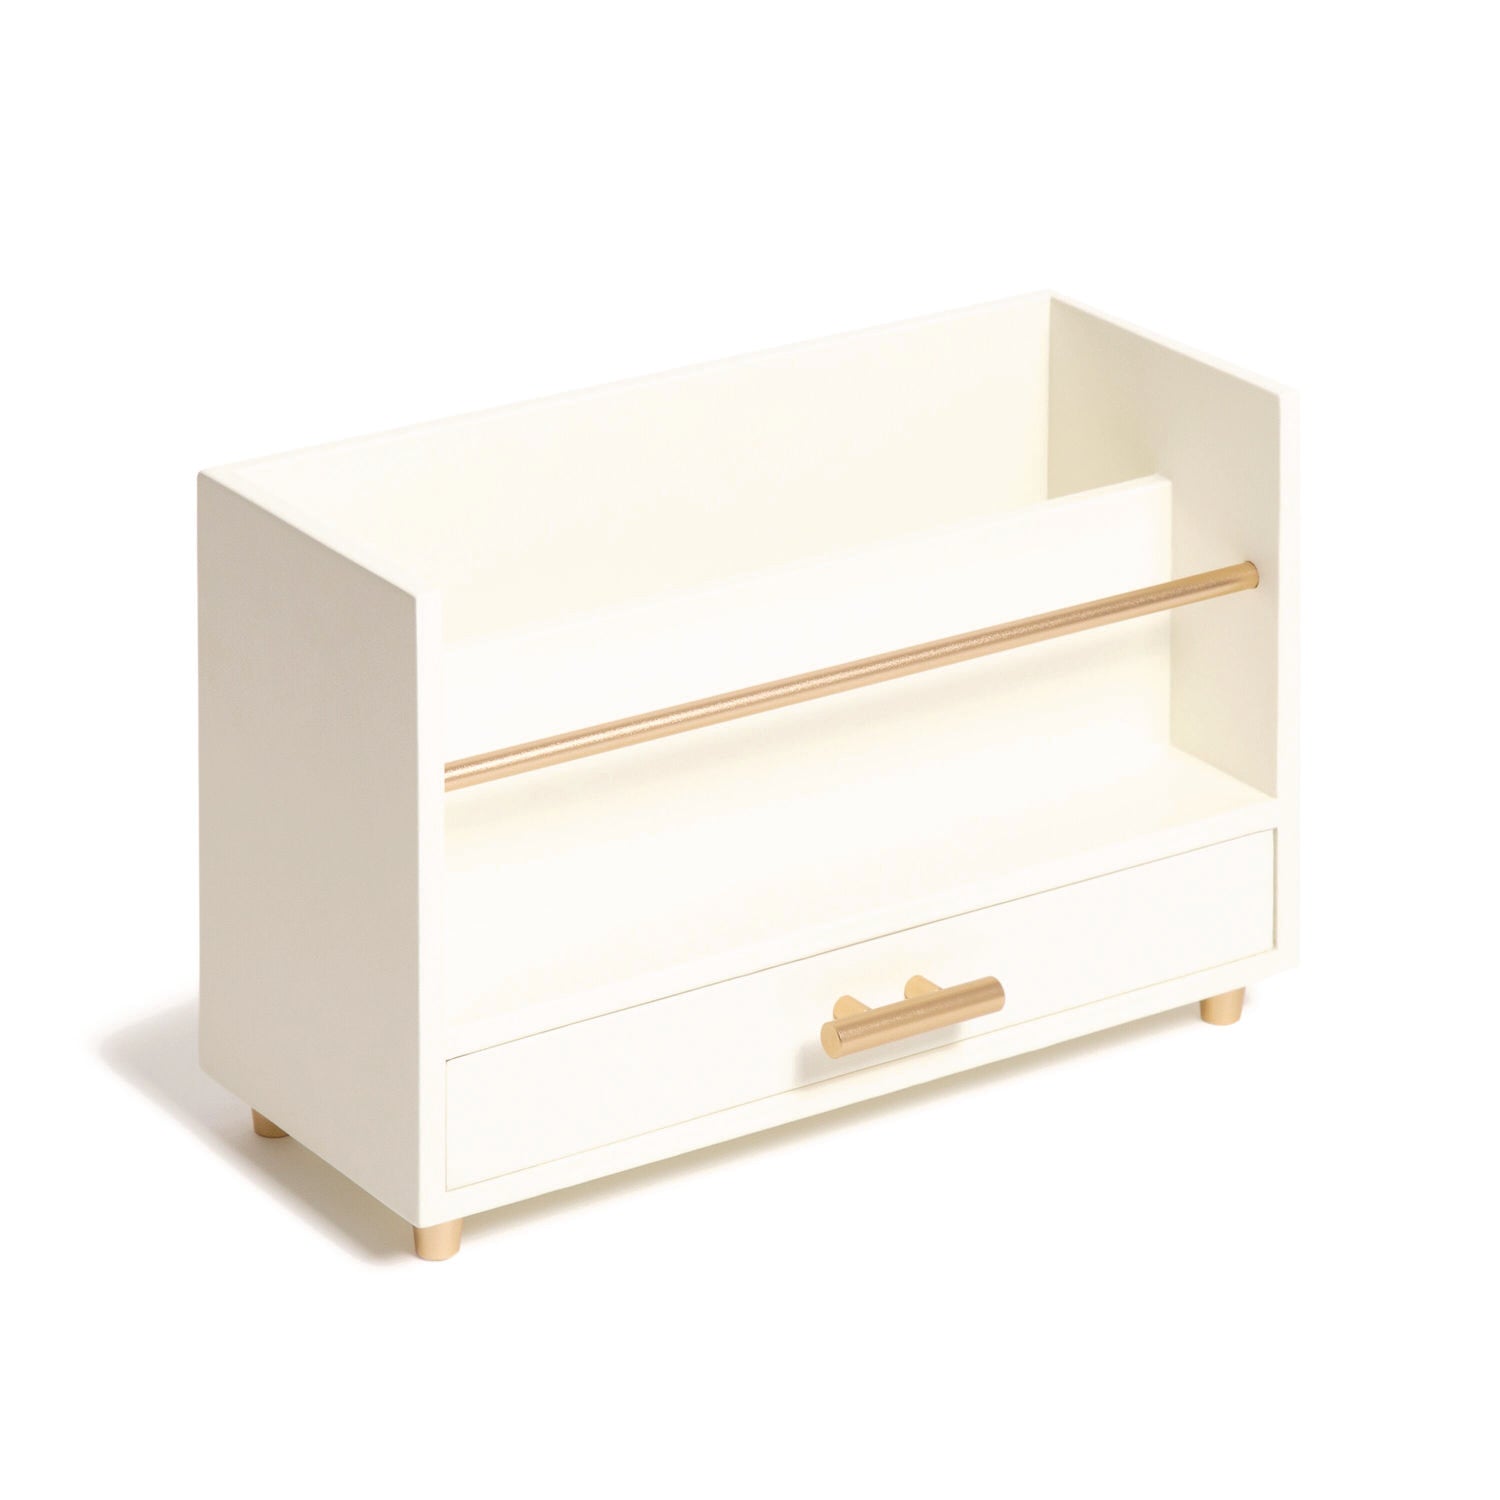 juliet-desk-organizer-3-compartments-1-drawer-95-x-42-x-49-white-gold-wood-metal_ubr3464u0312 - 2